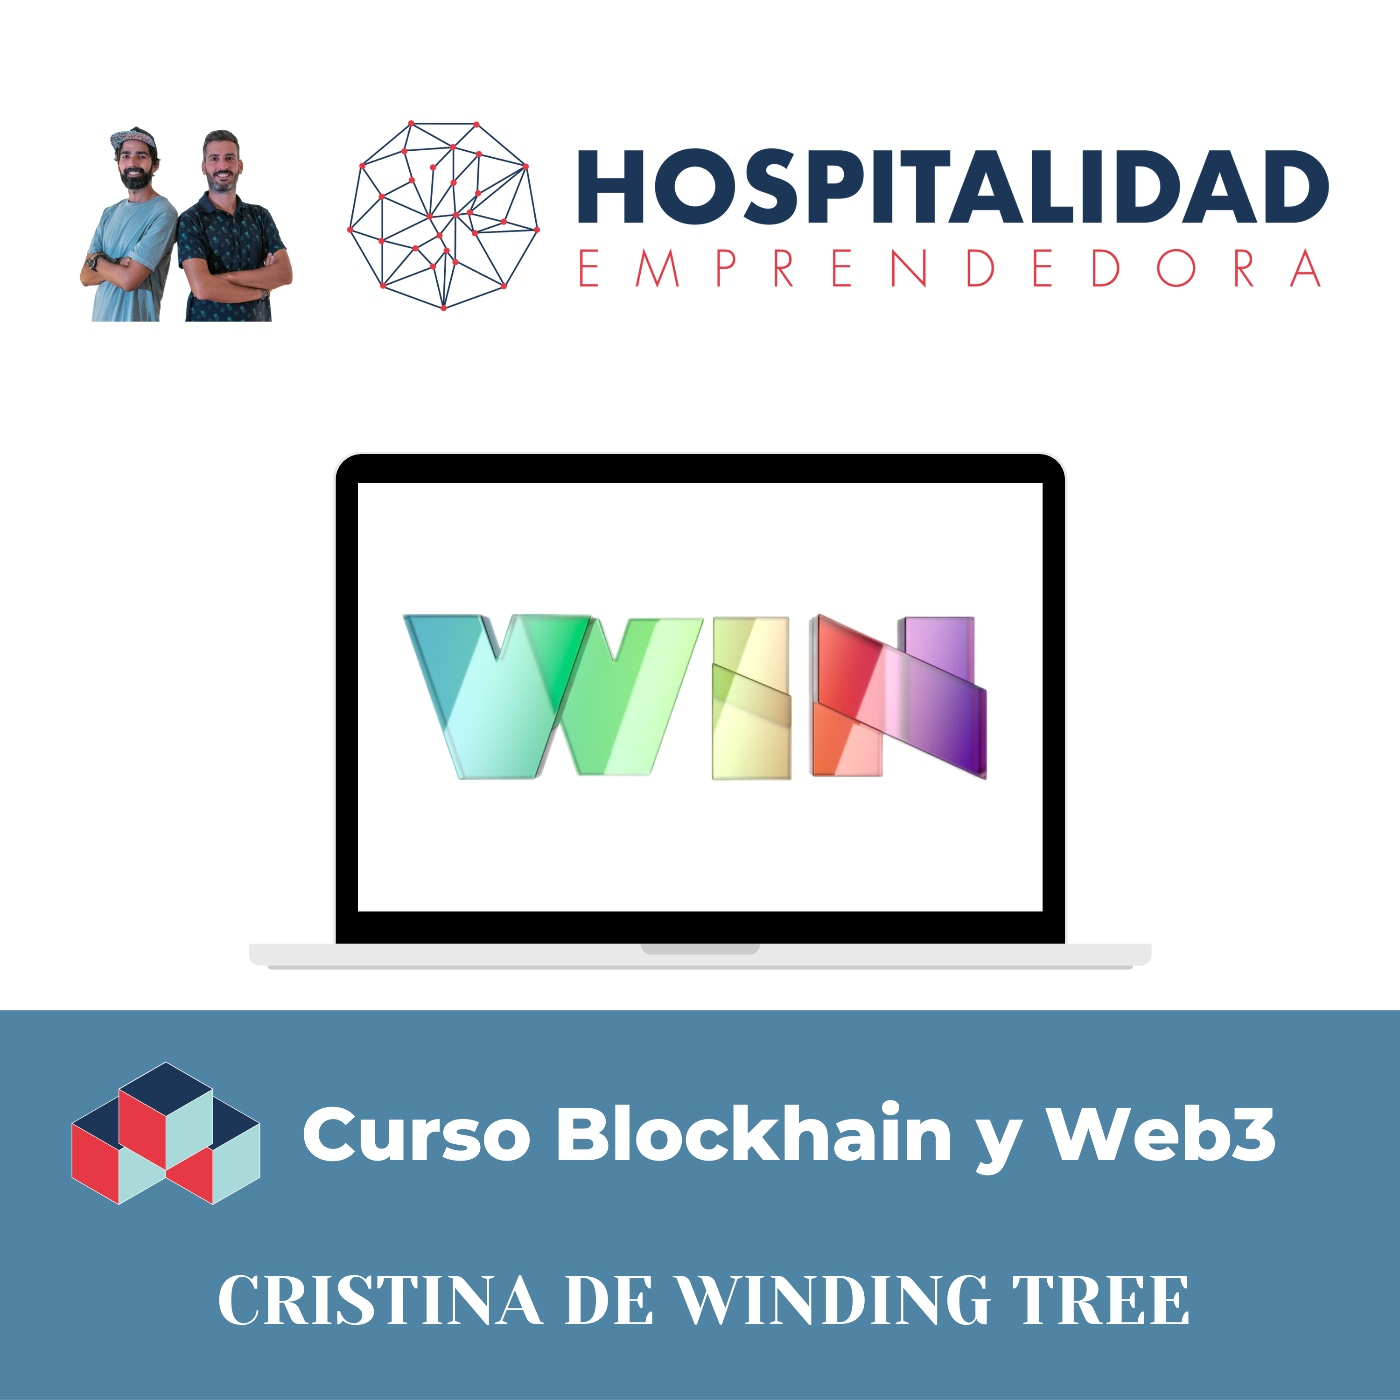 Curso Blockchain y Web 3 Turismo y Hotelería. Sesión 2. Distribución descentralizada con Cristina de Winding Tree